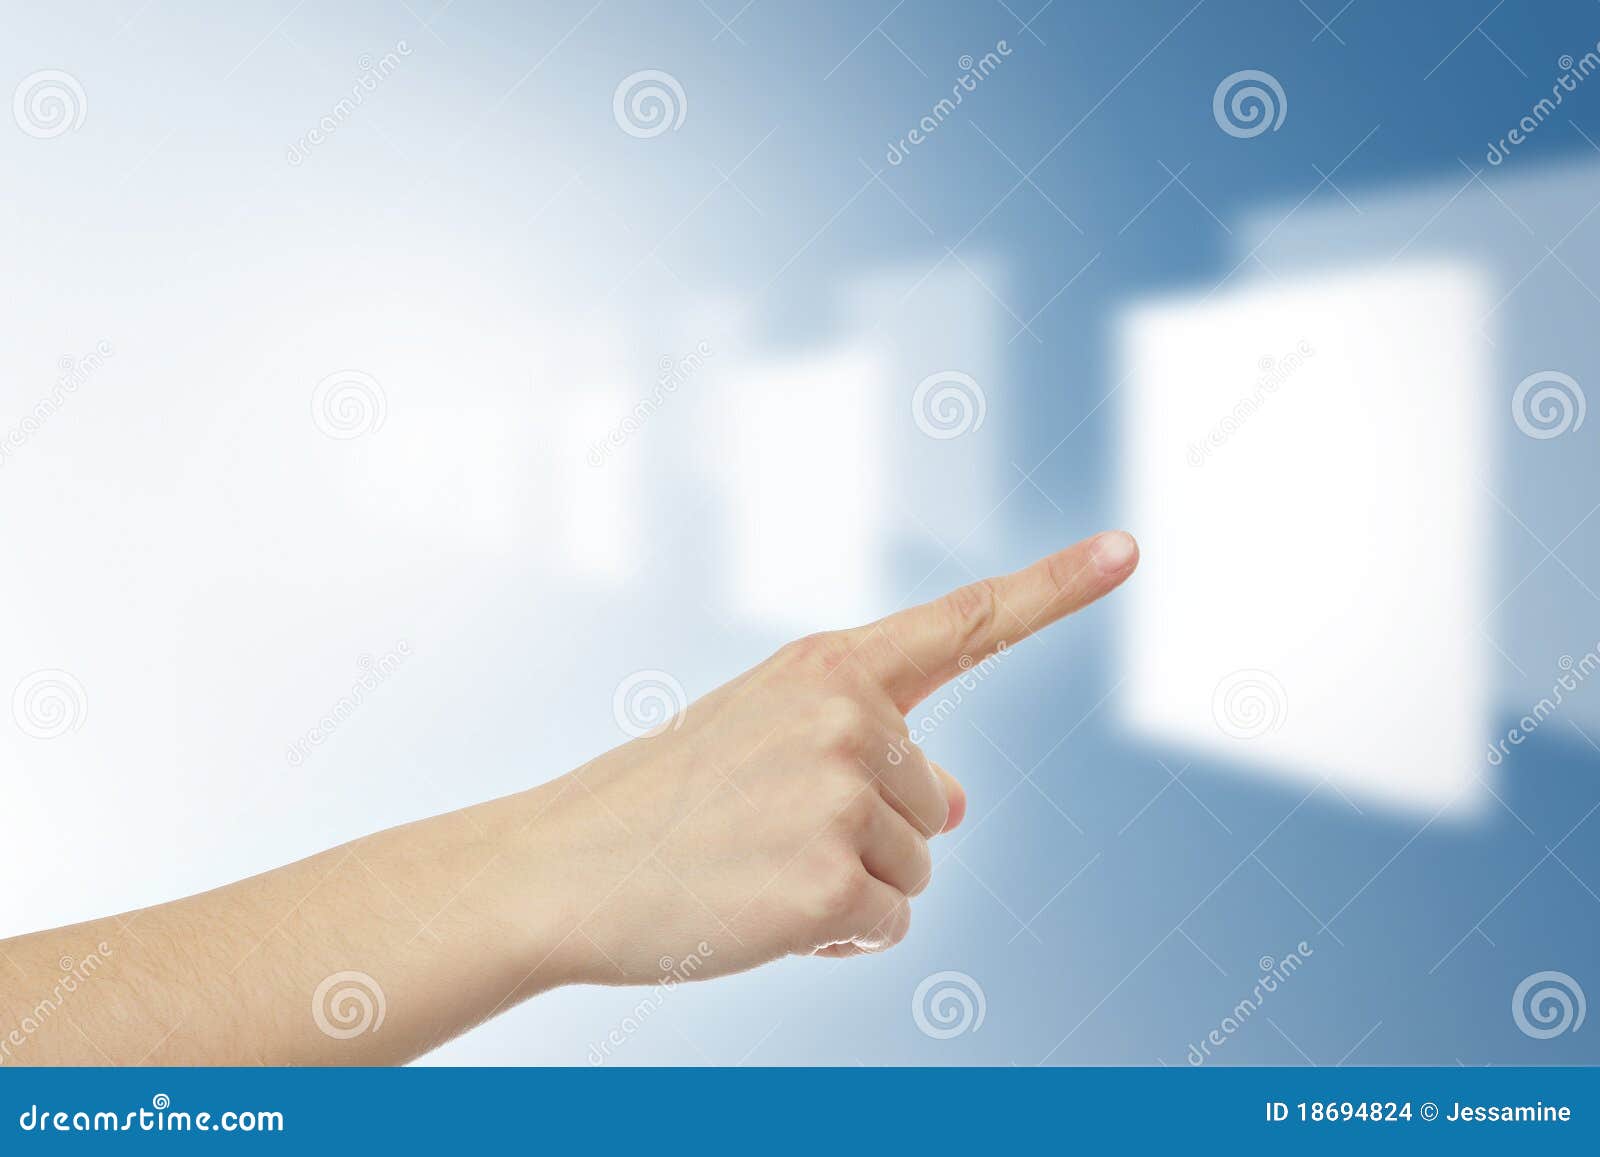 Нажатие пальцем на экран. Нажимает на экран. Парень пальцем нажимает на ко. Палец нажимает на кнопку женщина фотосъемка. Картинка нажатие пальцем на экран.